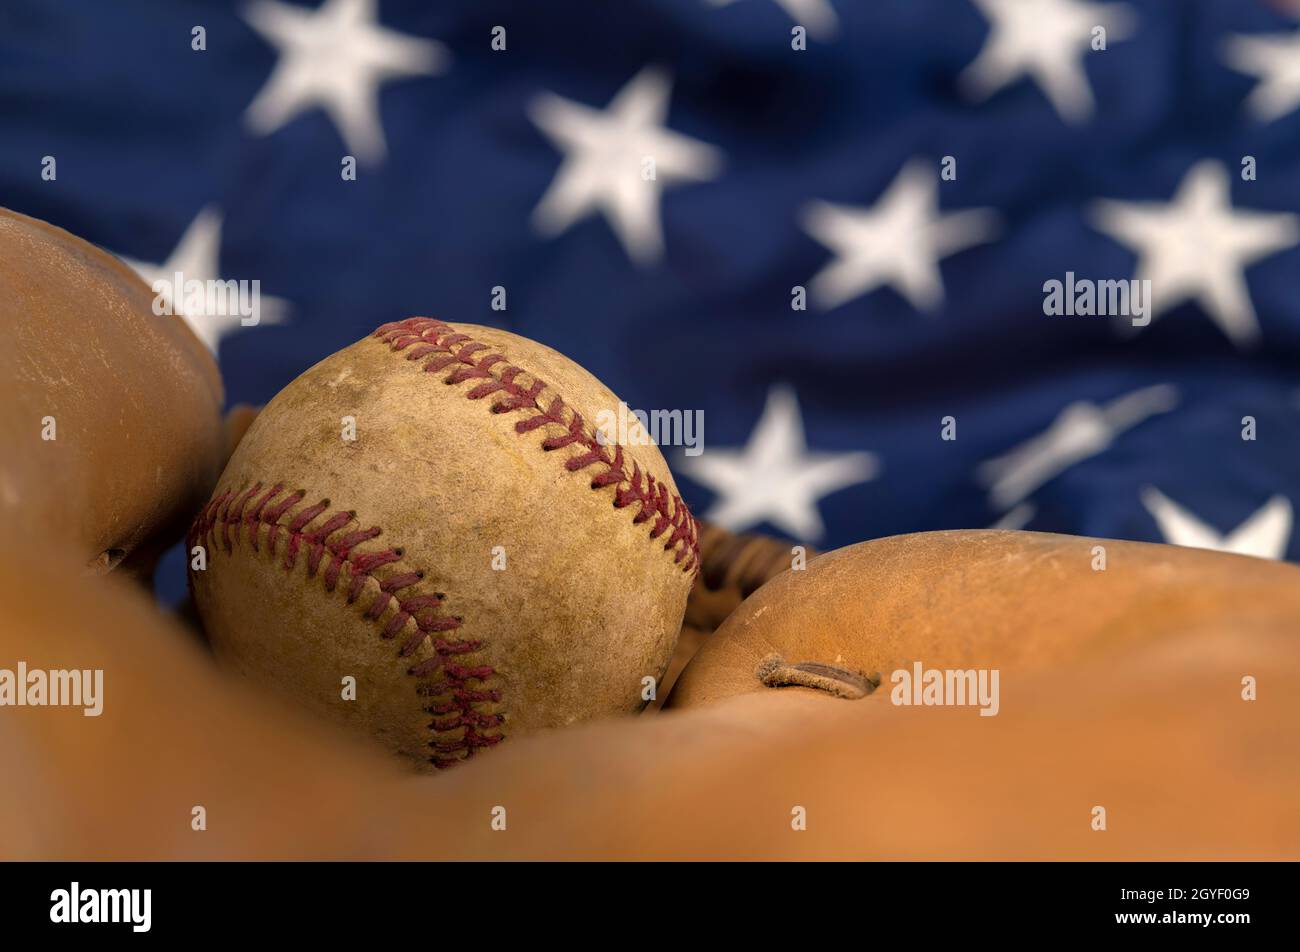 Il primo piano di un vecchio baseball e di un guanto contro la bandiera americana mette in evidenza uno degli sport più popolari del paese. Foto Stock